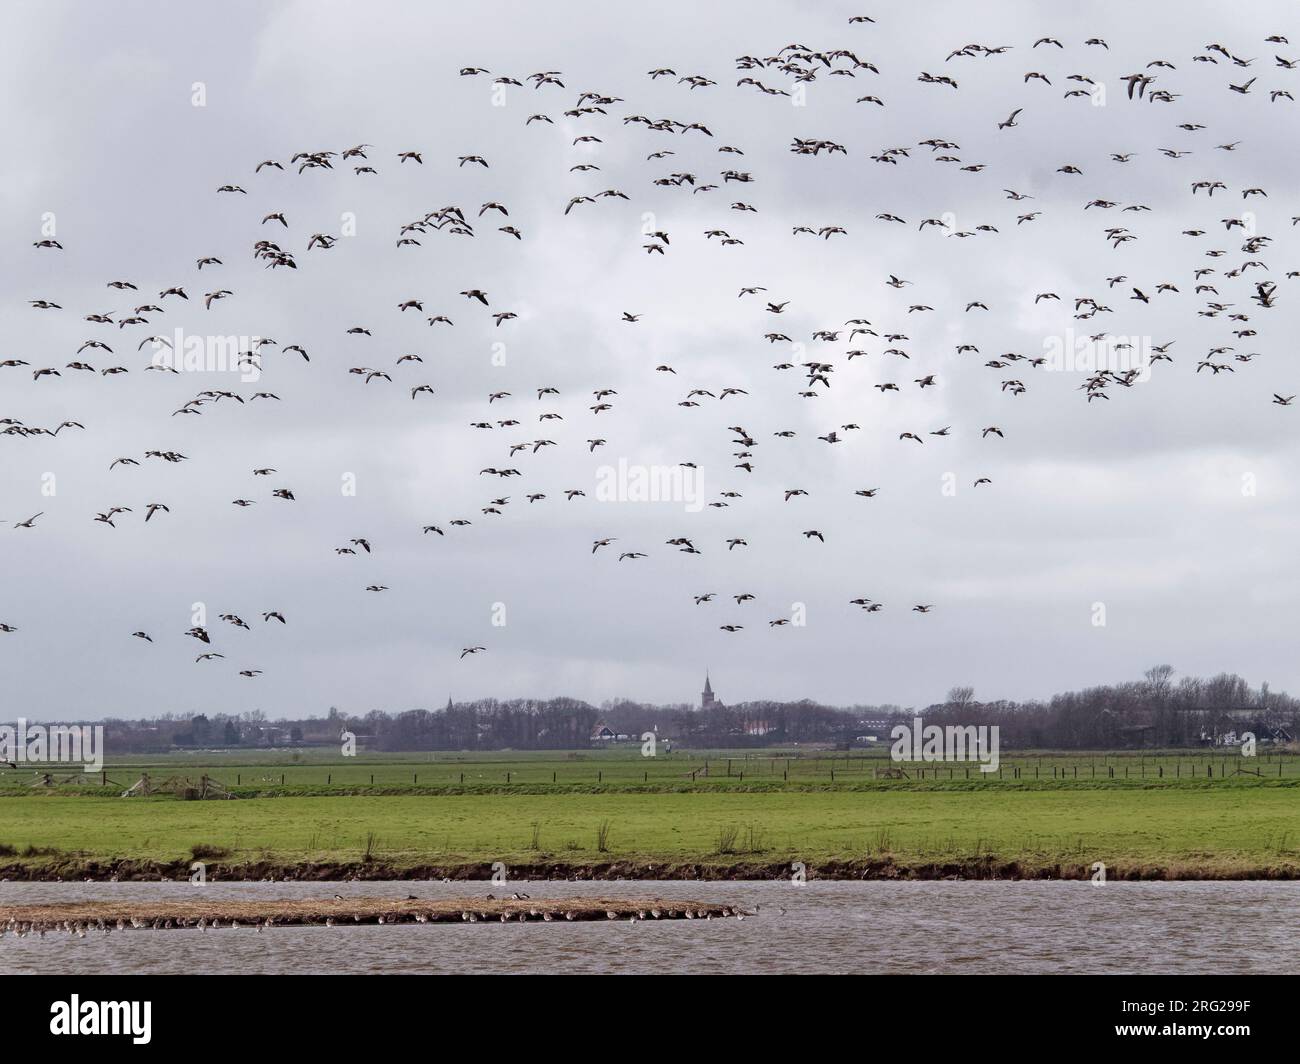 Site de repos des oiseaux en haute eau Ottersaat, Texel, pays-Bas Banque D'Images